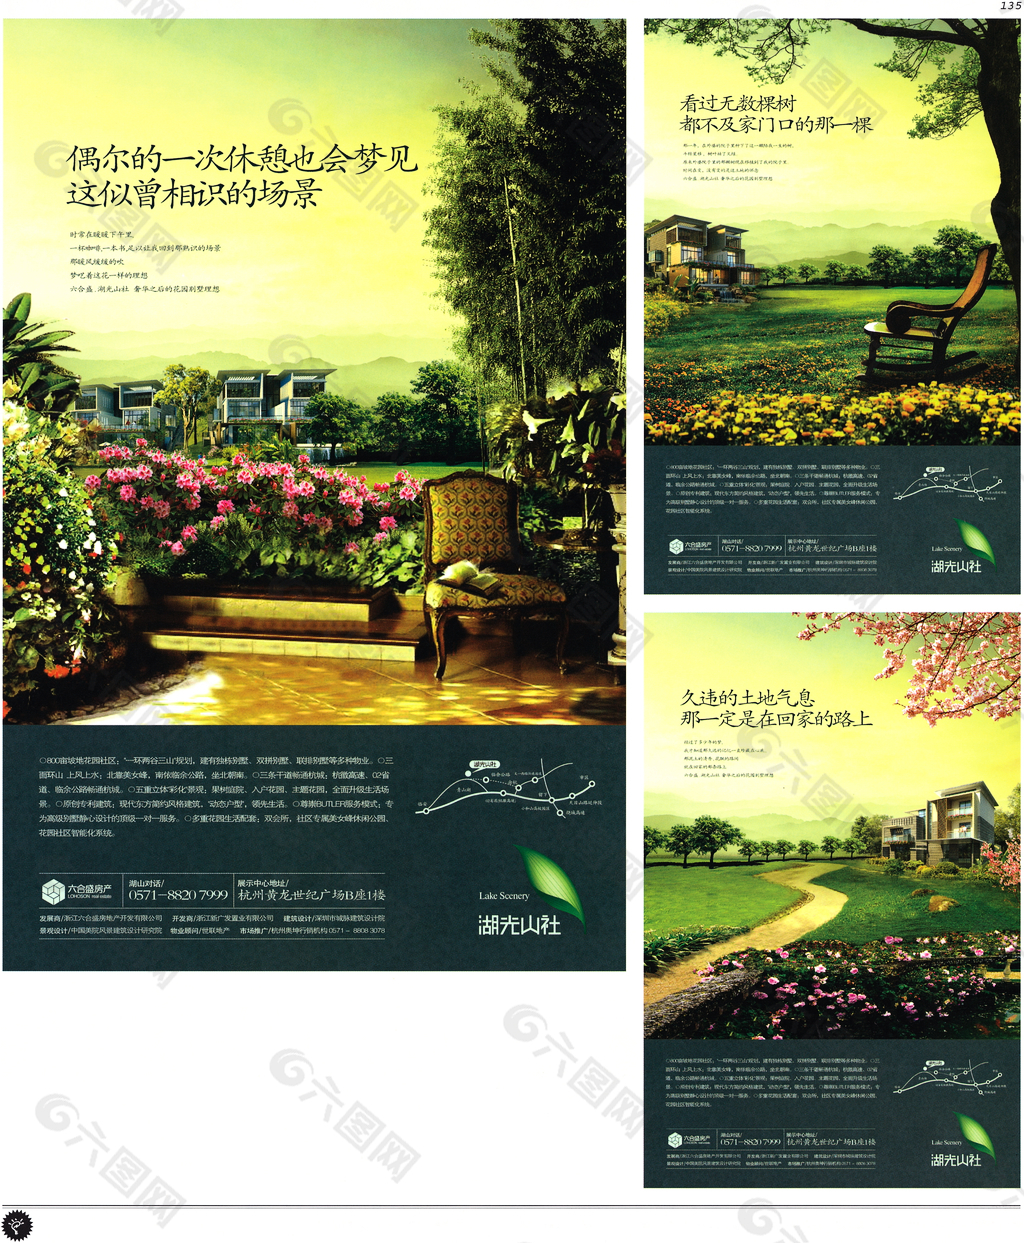 中国房地产广告年鉴 第一册 创意设计_0130